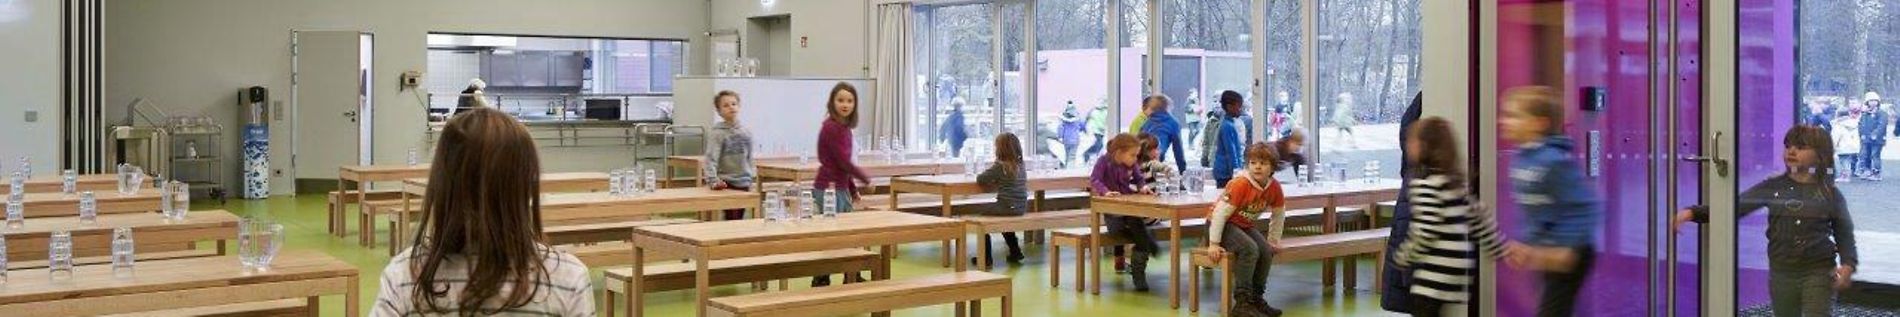 Schulmensa mit Tischen und Bänken, im Hintergrund die Essensausgabe. Schülerinnen und Schüler kommen zur Tür herein.